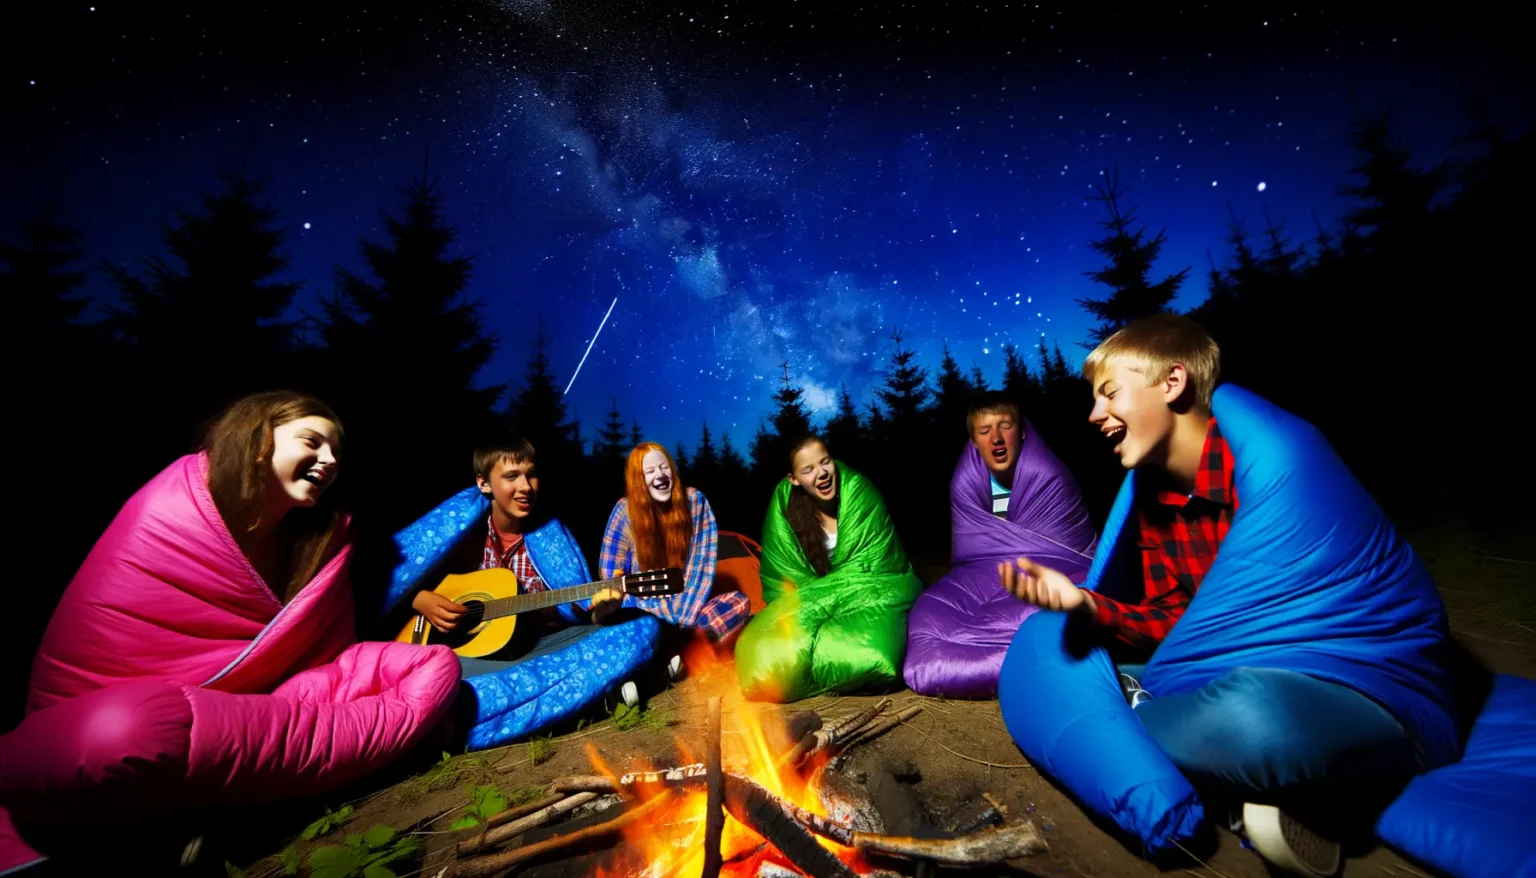 Gruppe von lächelnden Jugendlichen in bunten Schlafsäcken sitzt um ein Lagerfeuer unter einem Sternenhimmel mit sichtbarer Milchstraße und einer Sternschnuppe. Eine Person spielt Gitarre, während die anderen entspannt zuhören und sich amüsieren. Sie befinden sich in einem dunklen Wald.